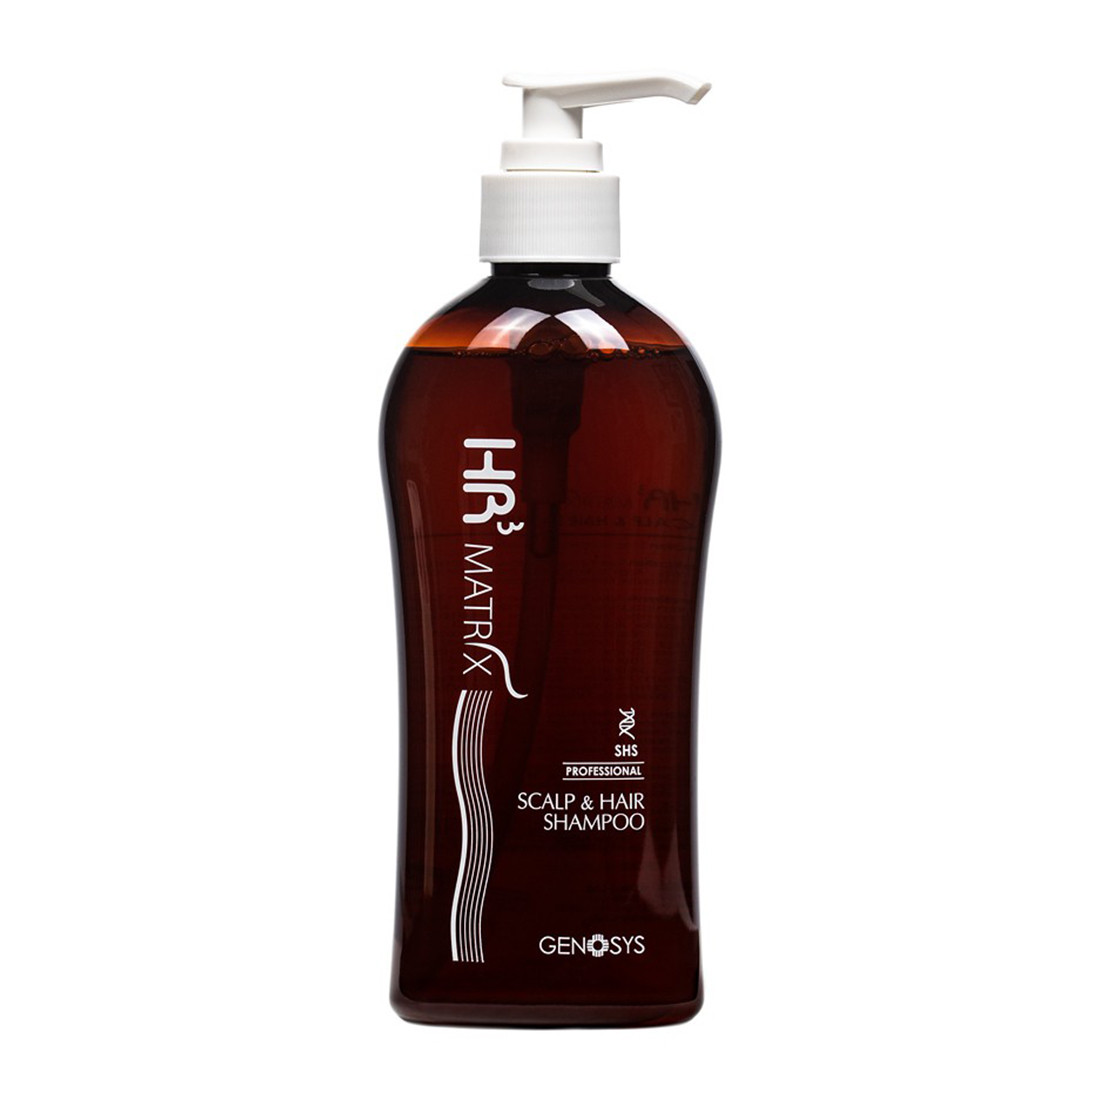 Отзывы о Genosys HR3 Matrix Scalp and Hair Shampoo (CHS) Шампунь против выпадения волос